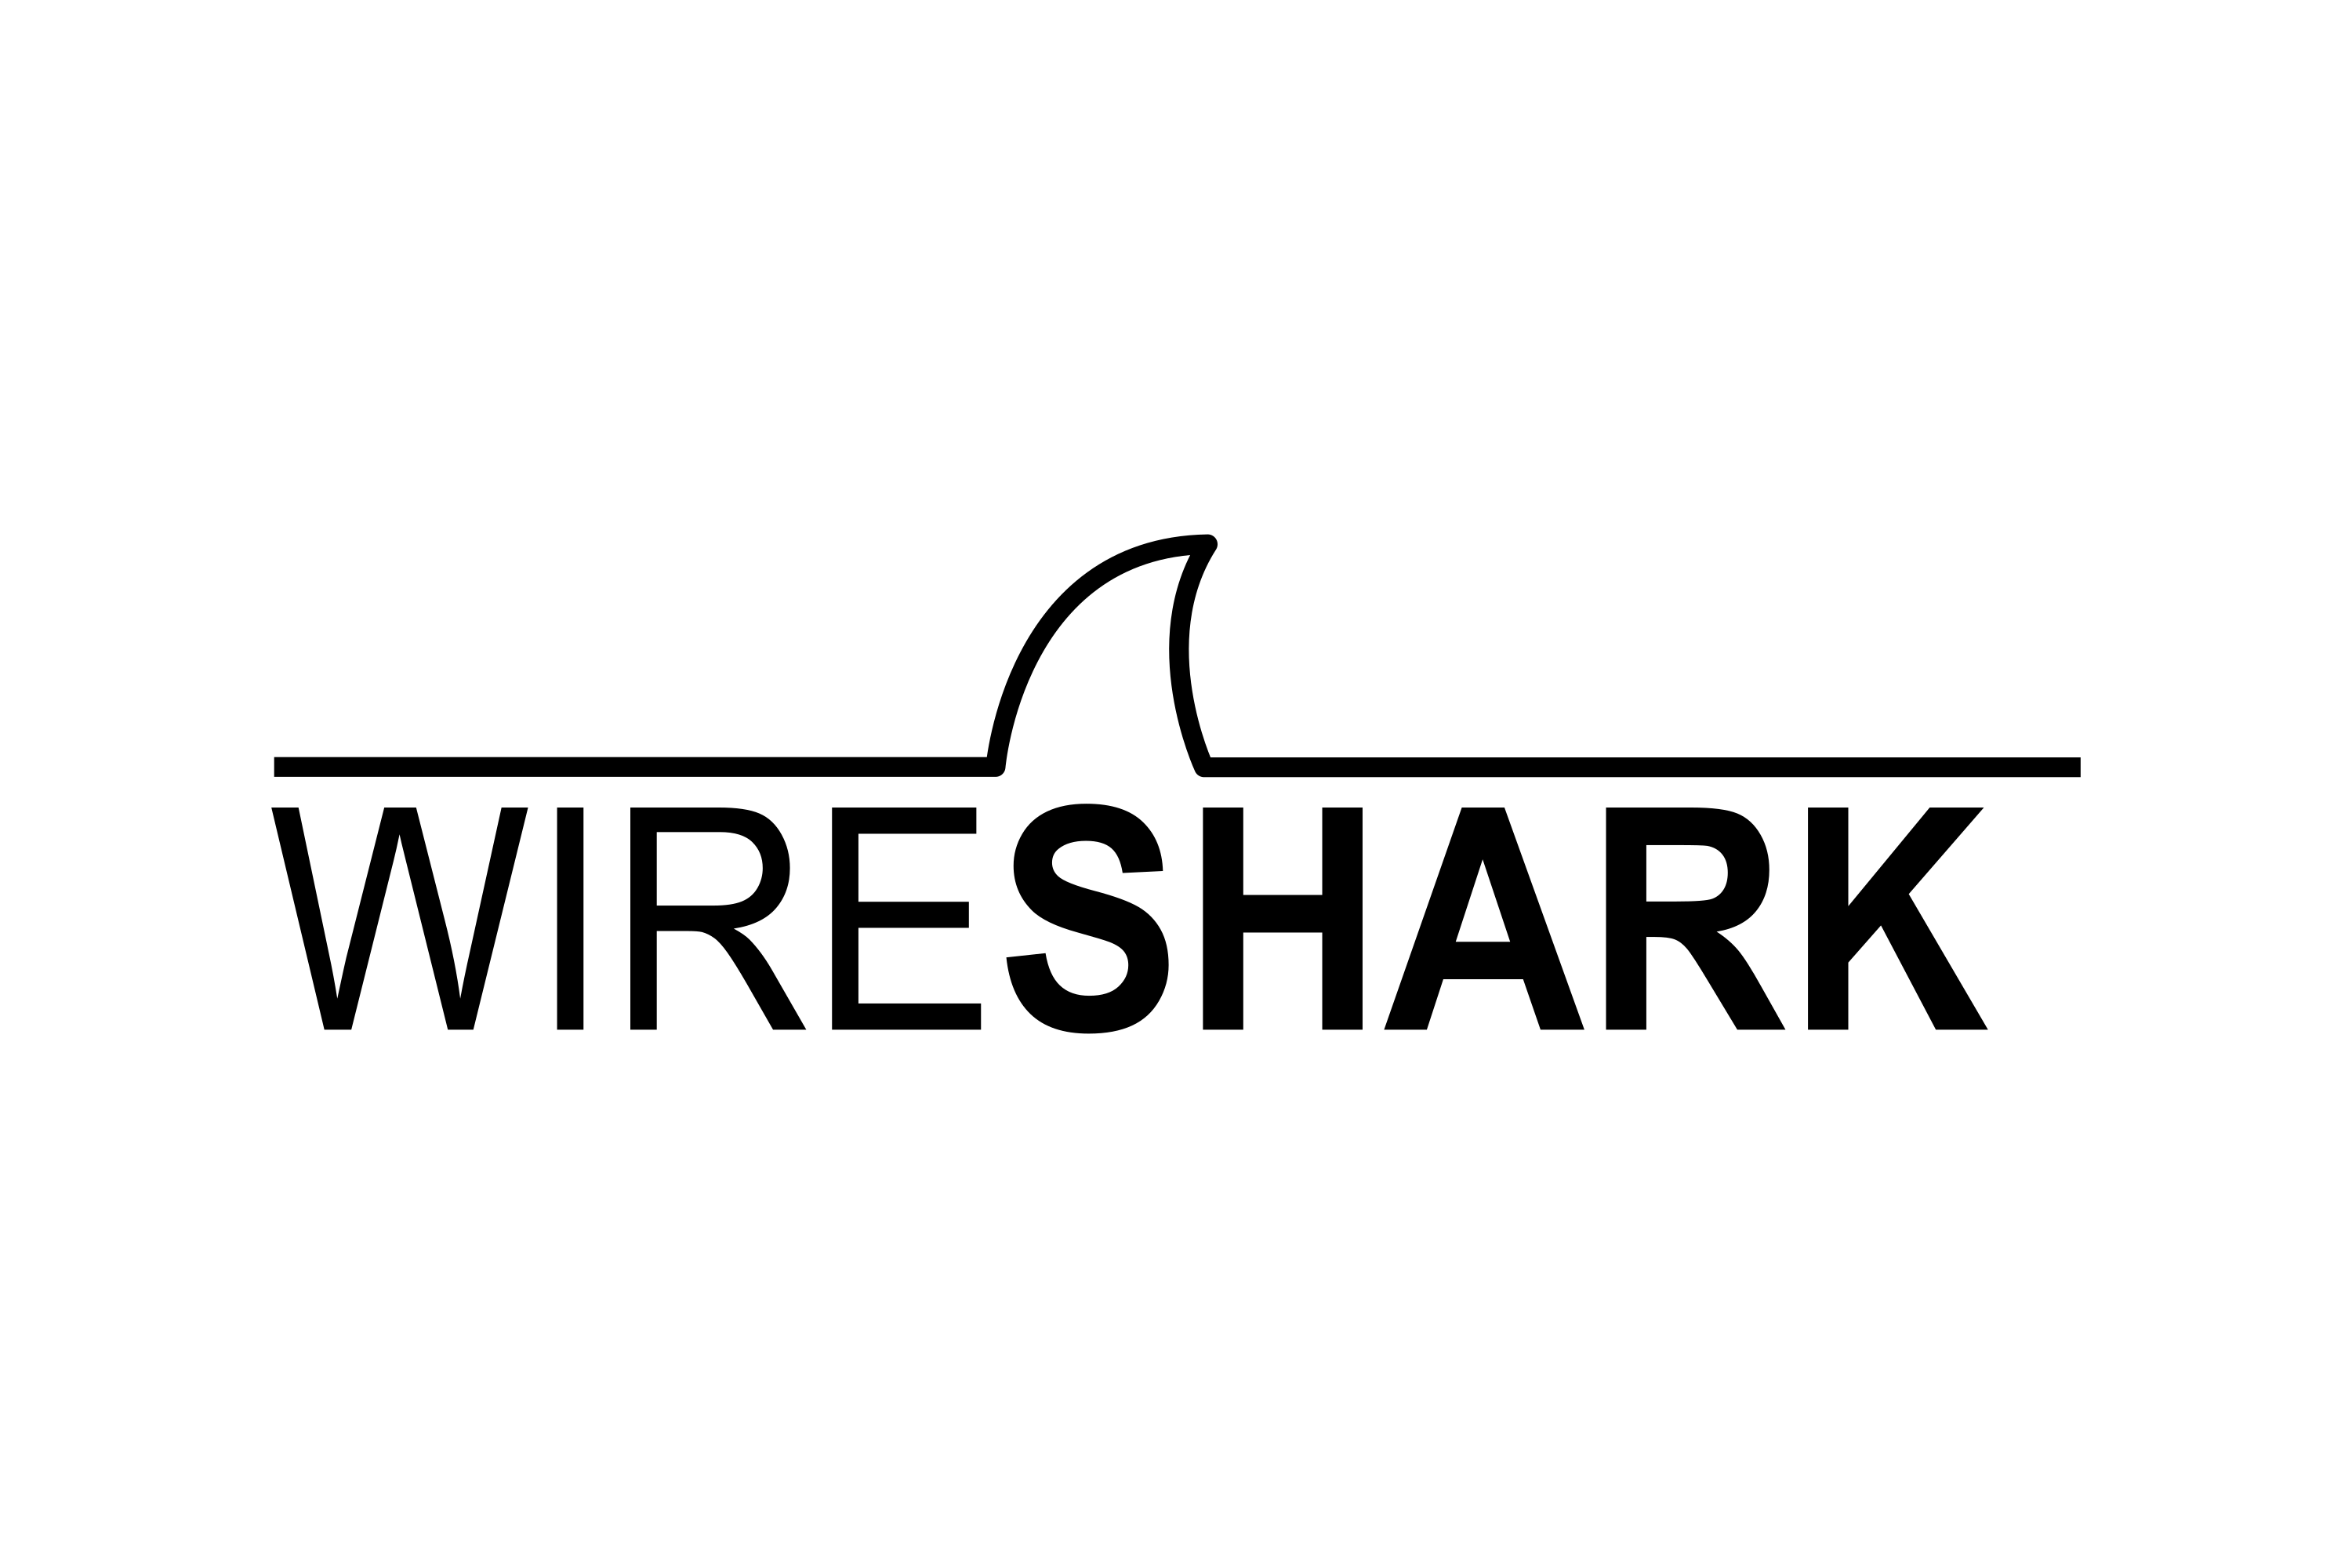 Wireshark. Wireshark logo. Wireshark PNG. Wireshark logo PNG.